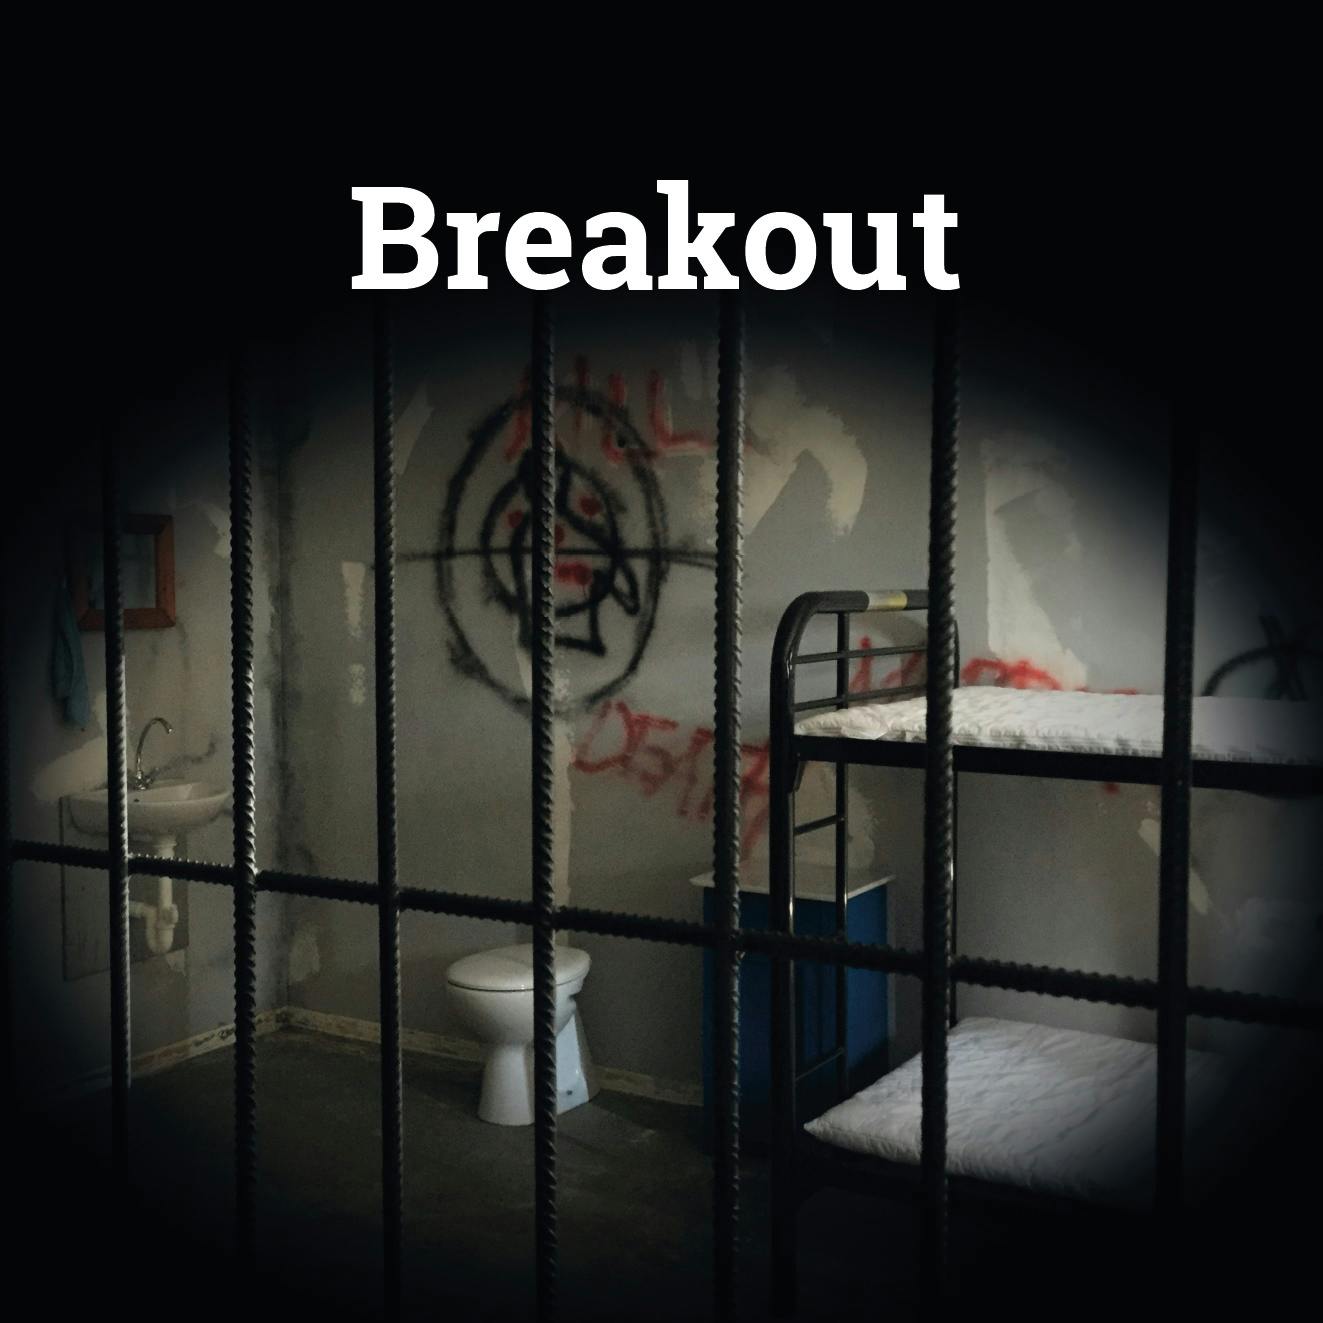 Escape Room juego "Breakout" en Saarbrücken